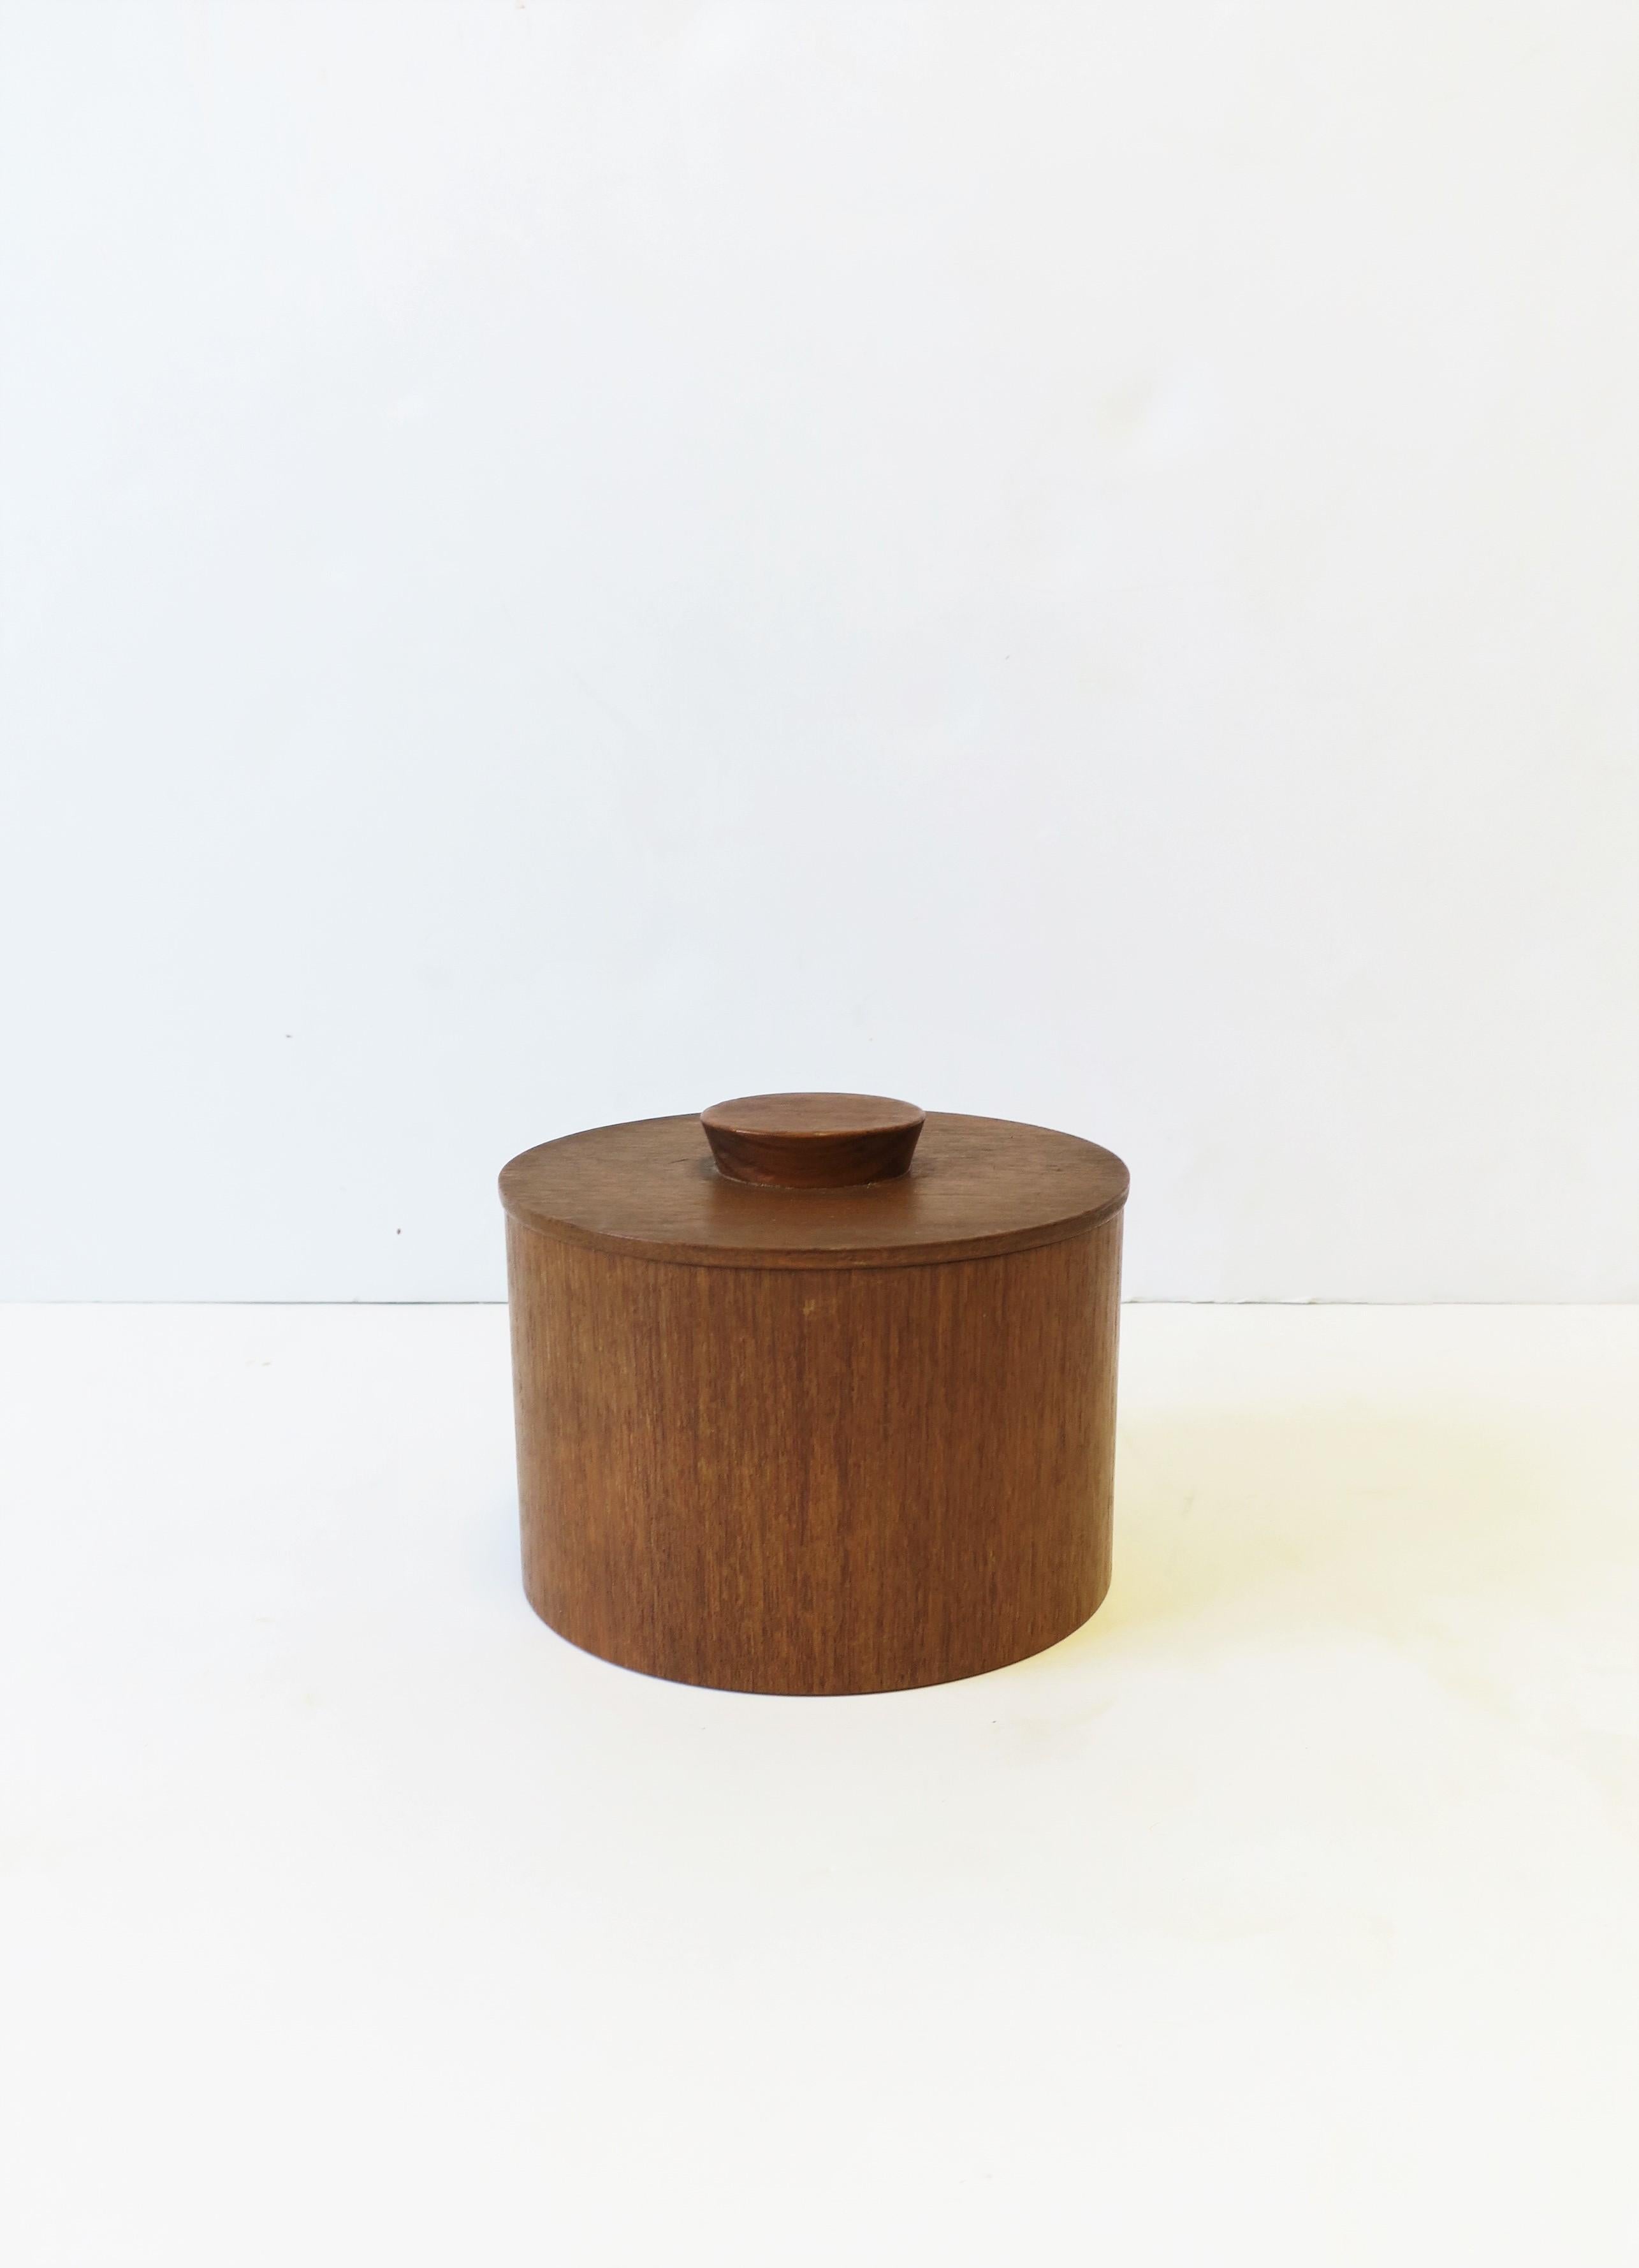 Boîte ronde en bois de teck The Modern Scandinavian CIRCA avec couvercle, vers le milieu du 20e siècle, Scandinavie. Une pièce idéale pour un bureau, un meuble-lavabo, un placard, etc. Dimensions : 5